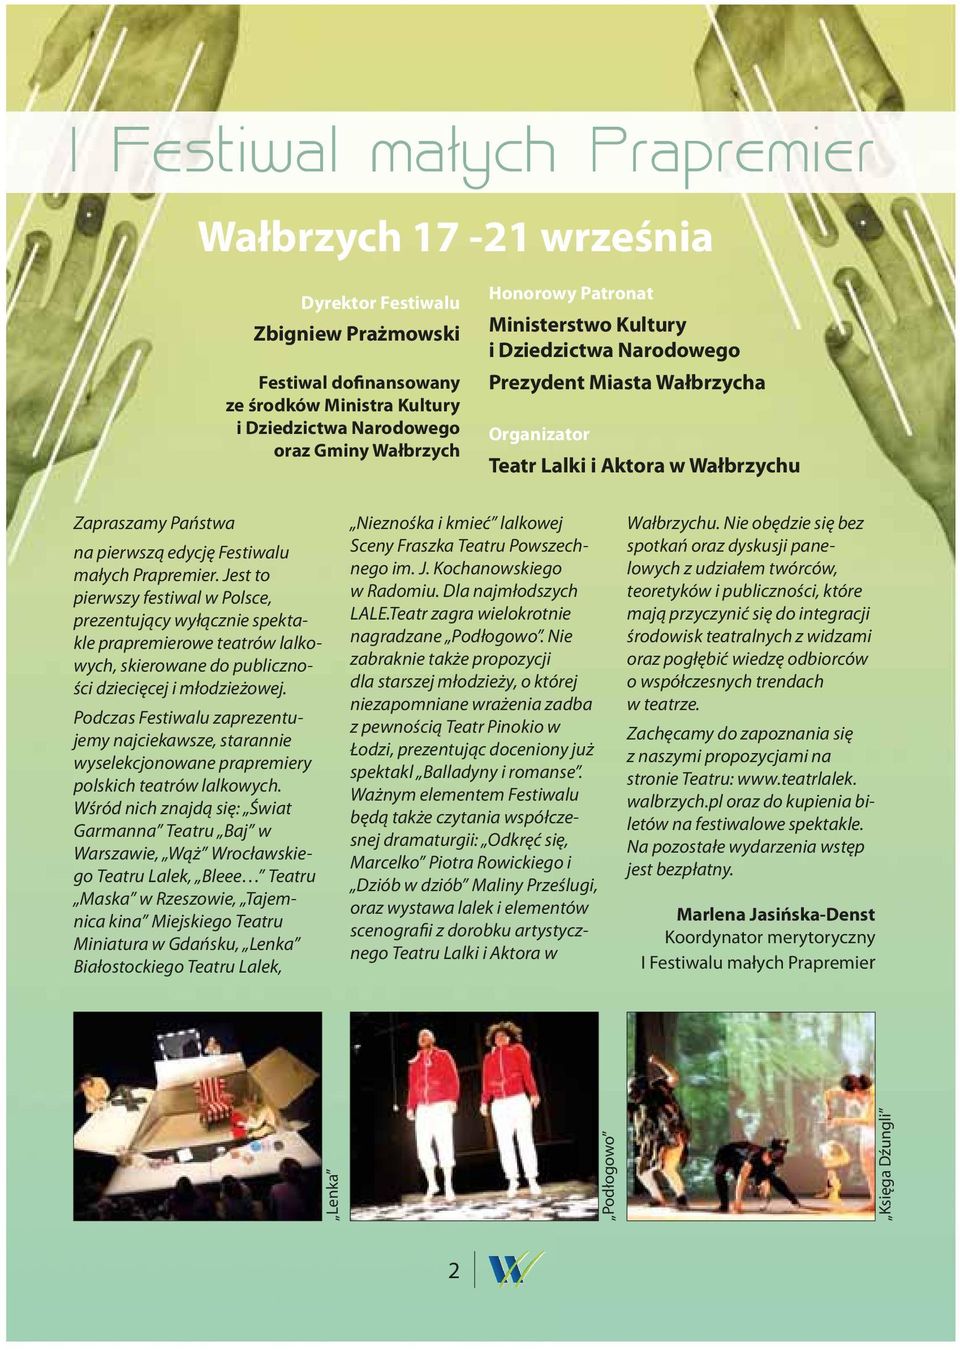 Jest to pierwszy festiwal w Polsce, prezentujący wyłącznie spektakle prapremierowe teatrów lalkowych, skierowane do publiczności dziecięcej i młodzieżowej.